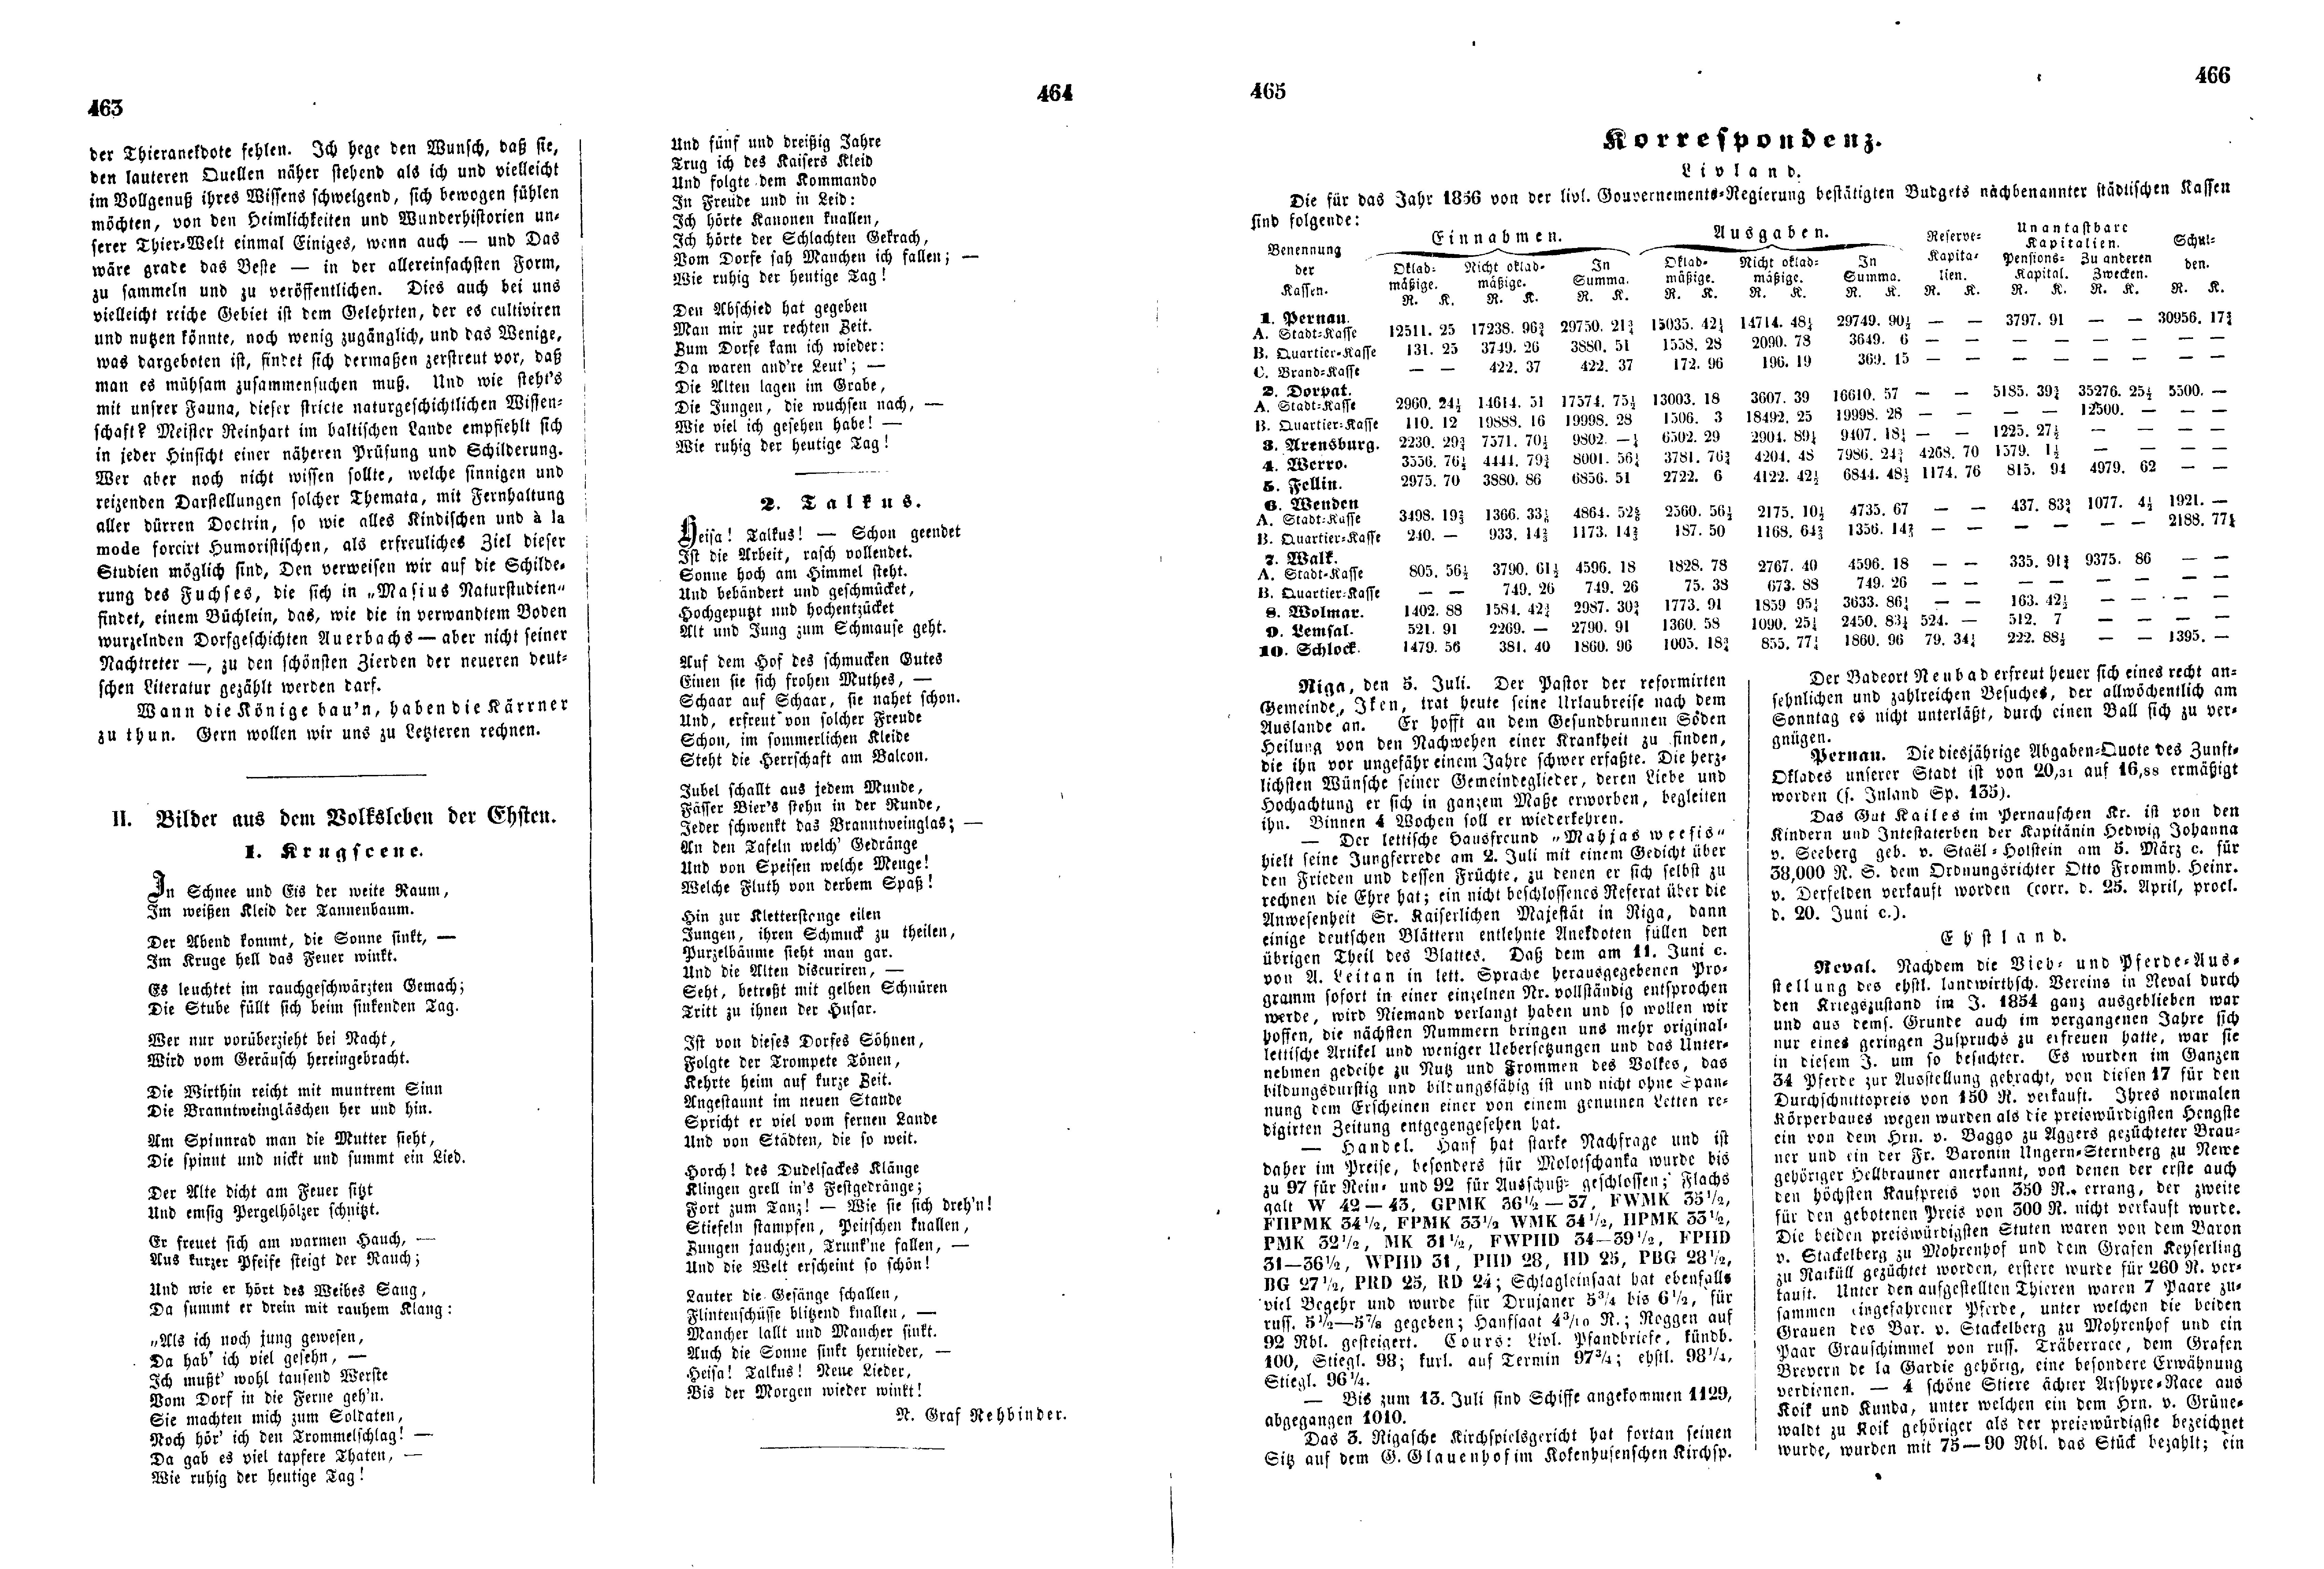 Krugscene (1856) | 1. (463-466) Haupttext